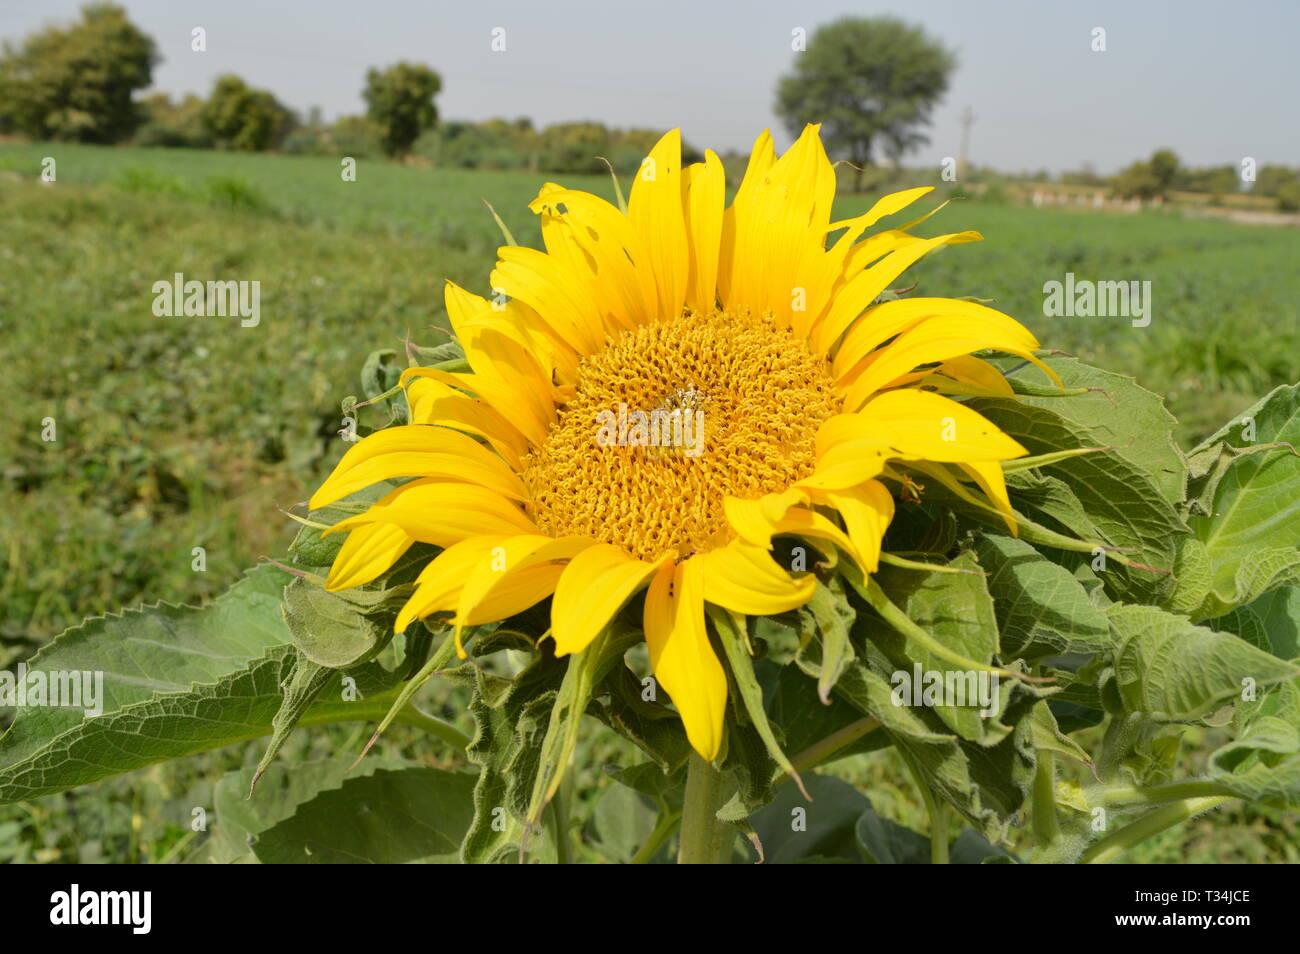 Sonnenblume mit grünem Blatt, Schöne gelbe Sonnenblume Indien, Landwirtschaftsfeld, Landwirtschaft, Schönheit In der Natur, Botany, Die gemeinsame Sonnenblume Stockfoto